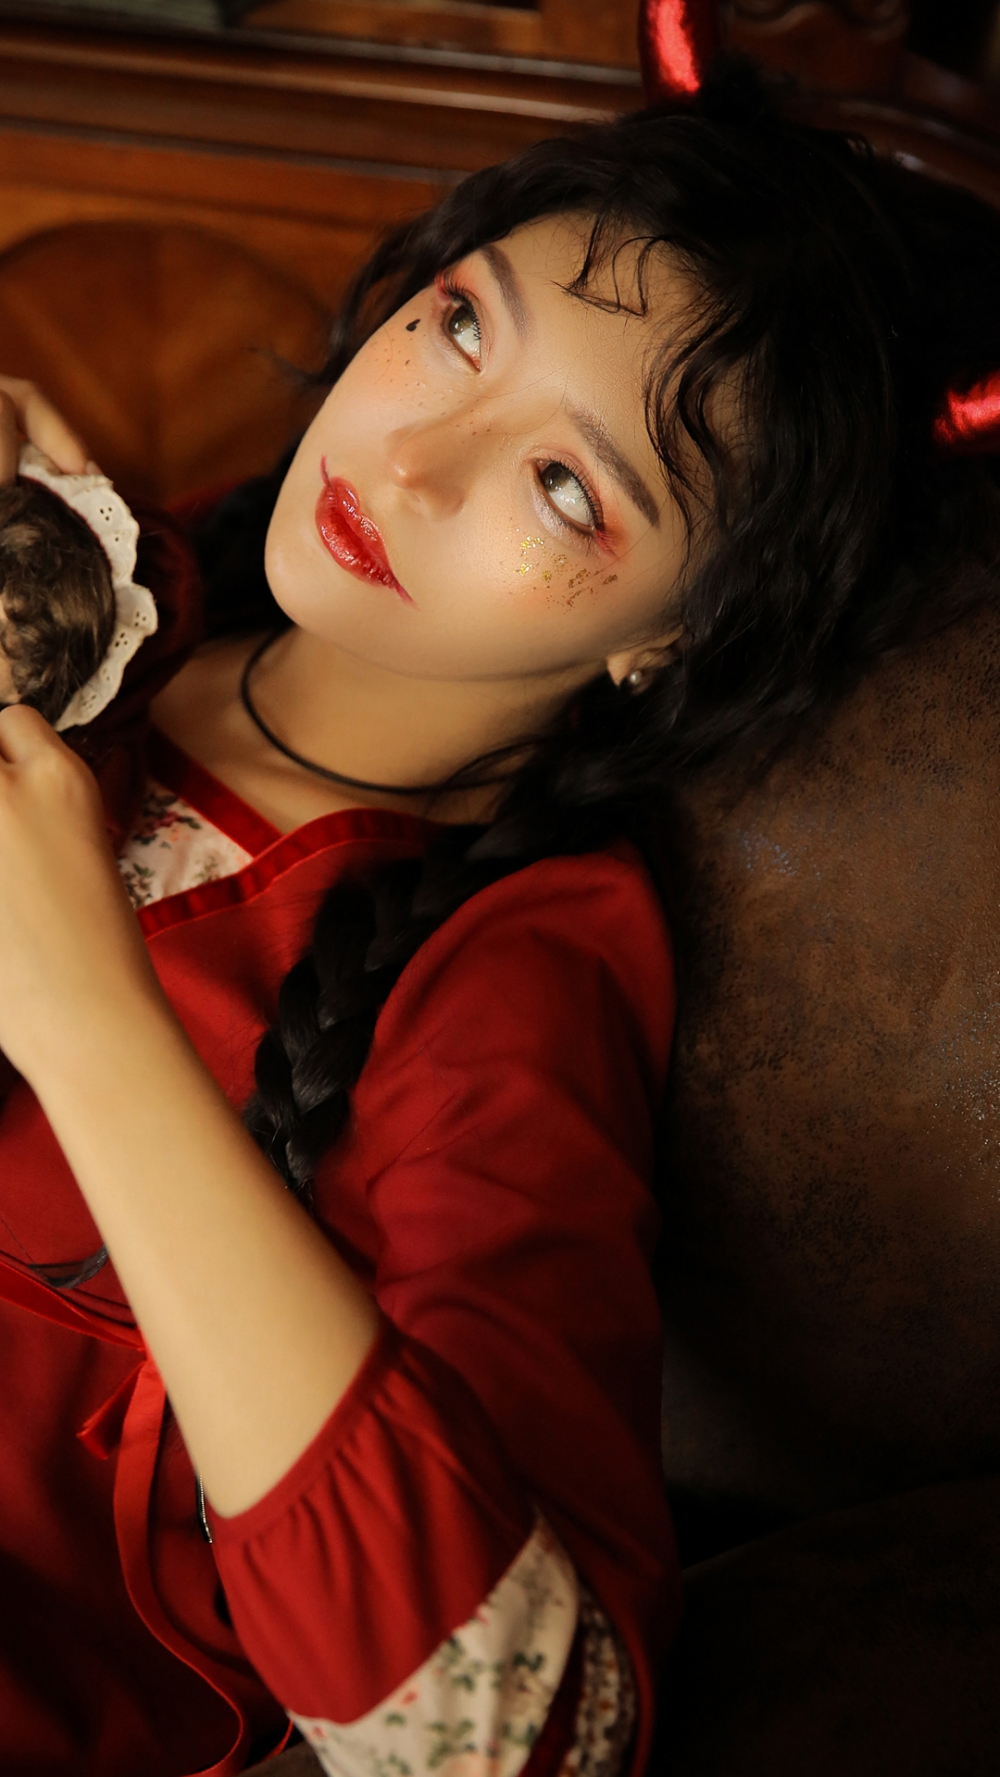 雀斑妆少女万圣节服装红色装扮暗黑风个性写真图片极品性感美女私密艺术照图片